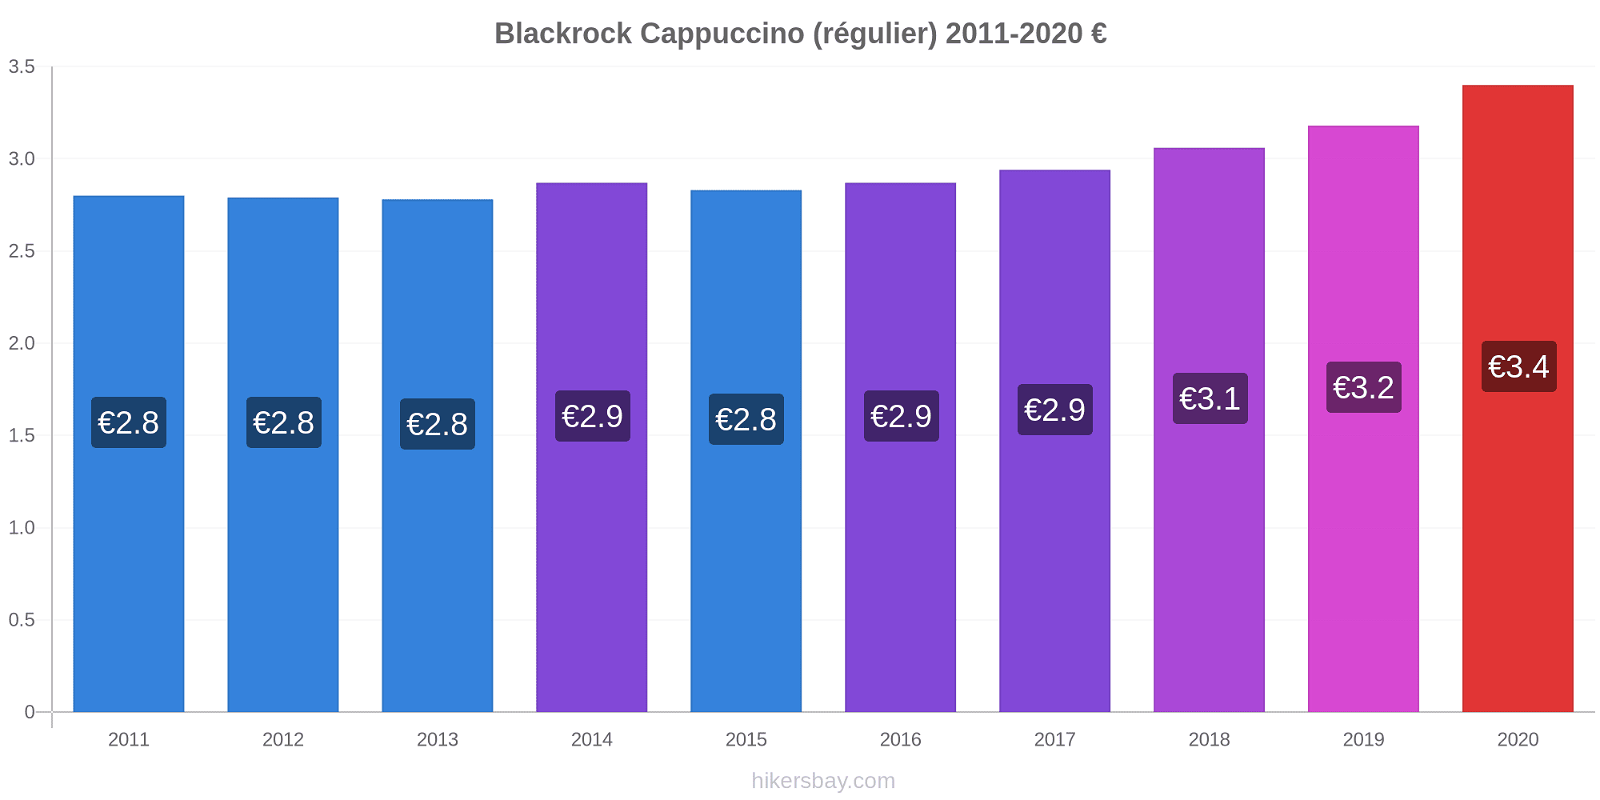 Blackrock changements de prix Cappuccino (régulier) hikersbay.com